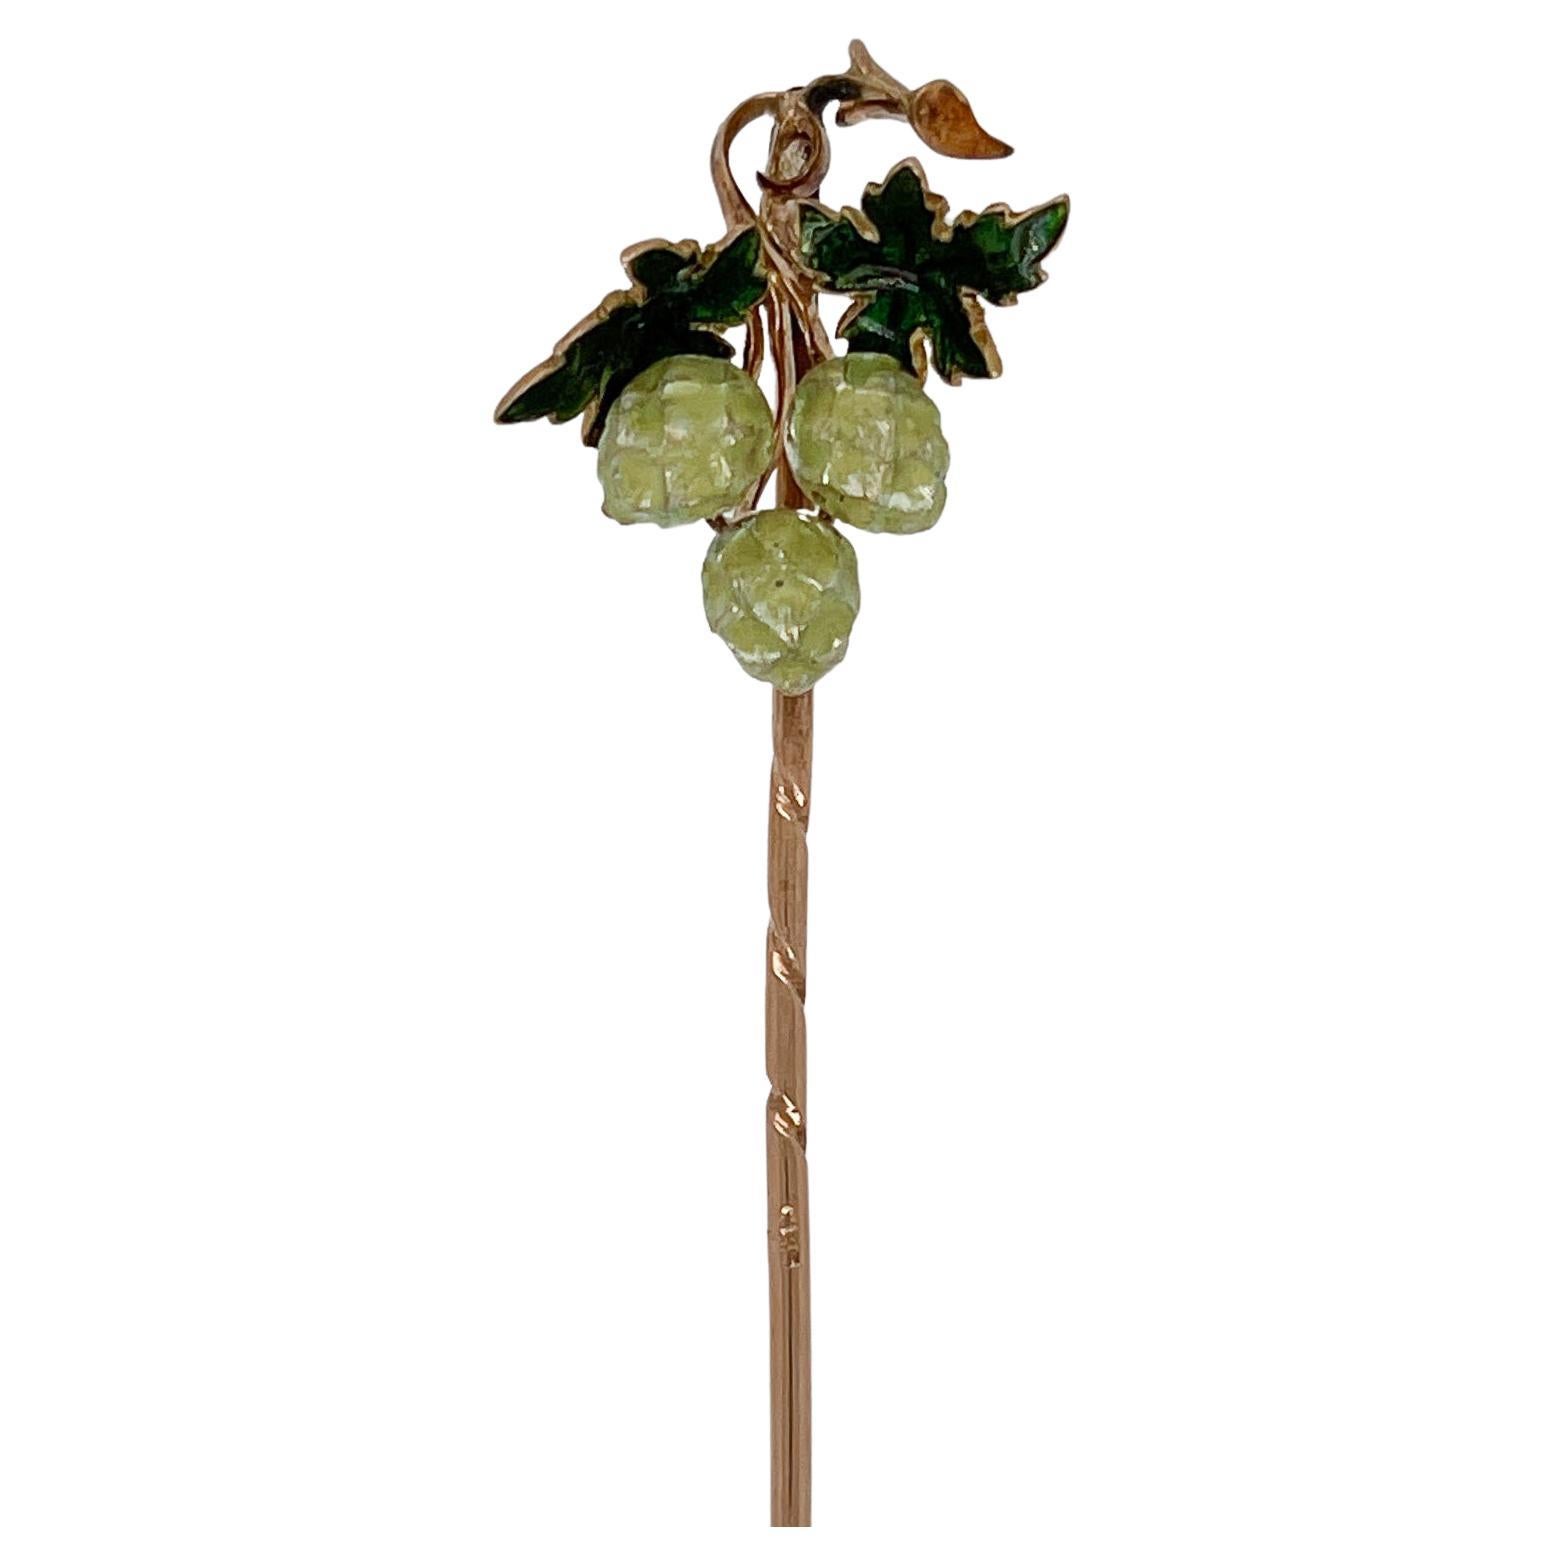 Antique 14 Karat Gold and Enameled Hop Seed or Flower Stickpin